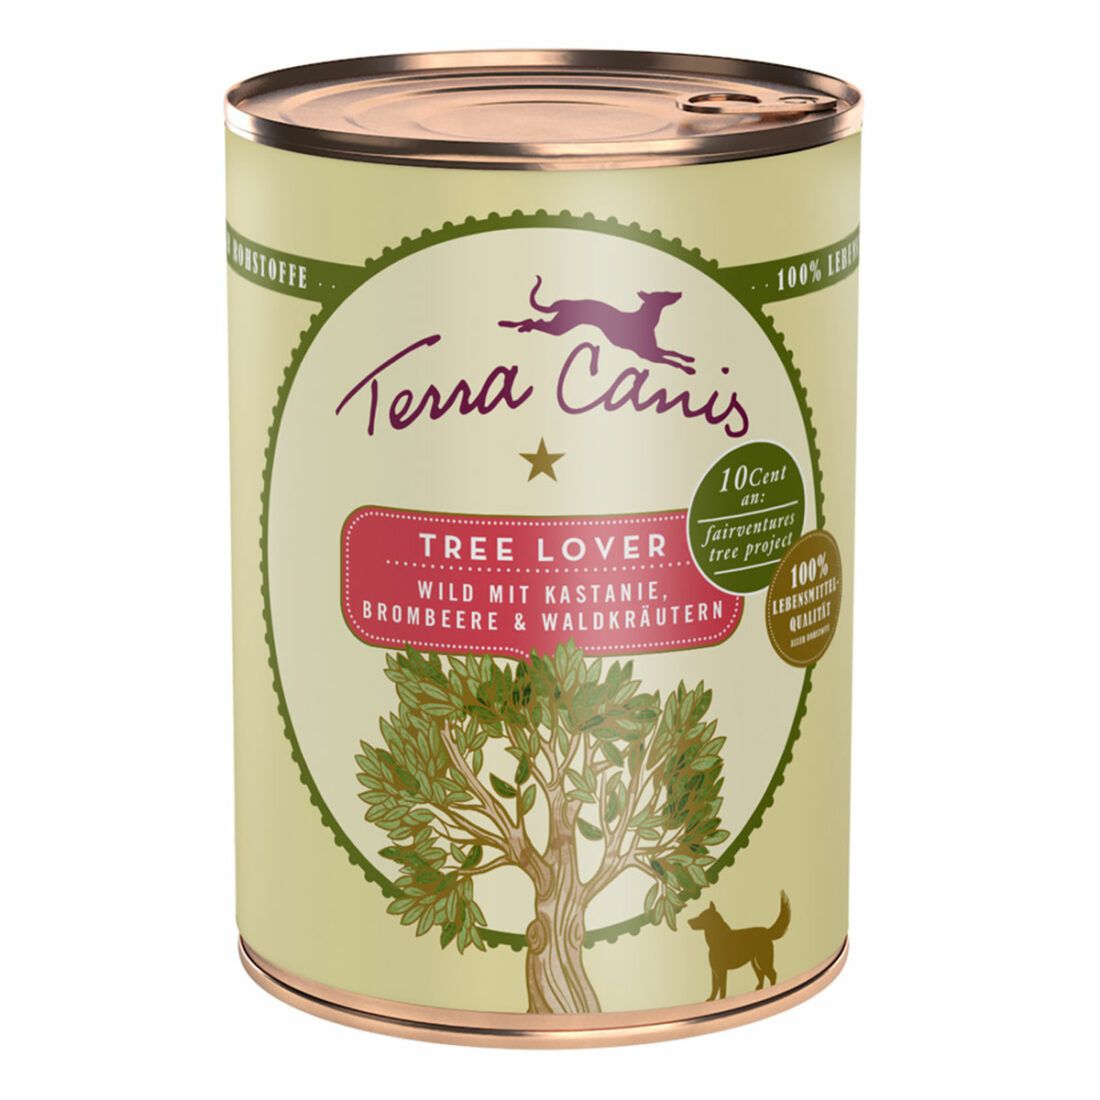 Terra Canis Tree Lover zvěřina s jedlými kaštany